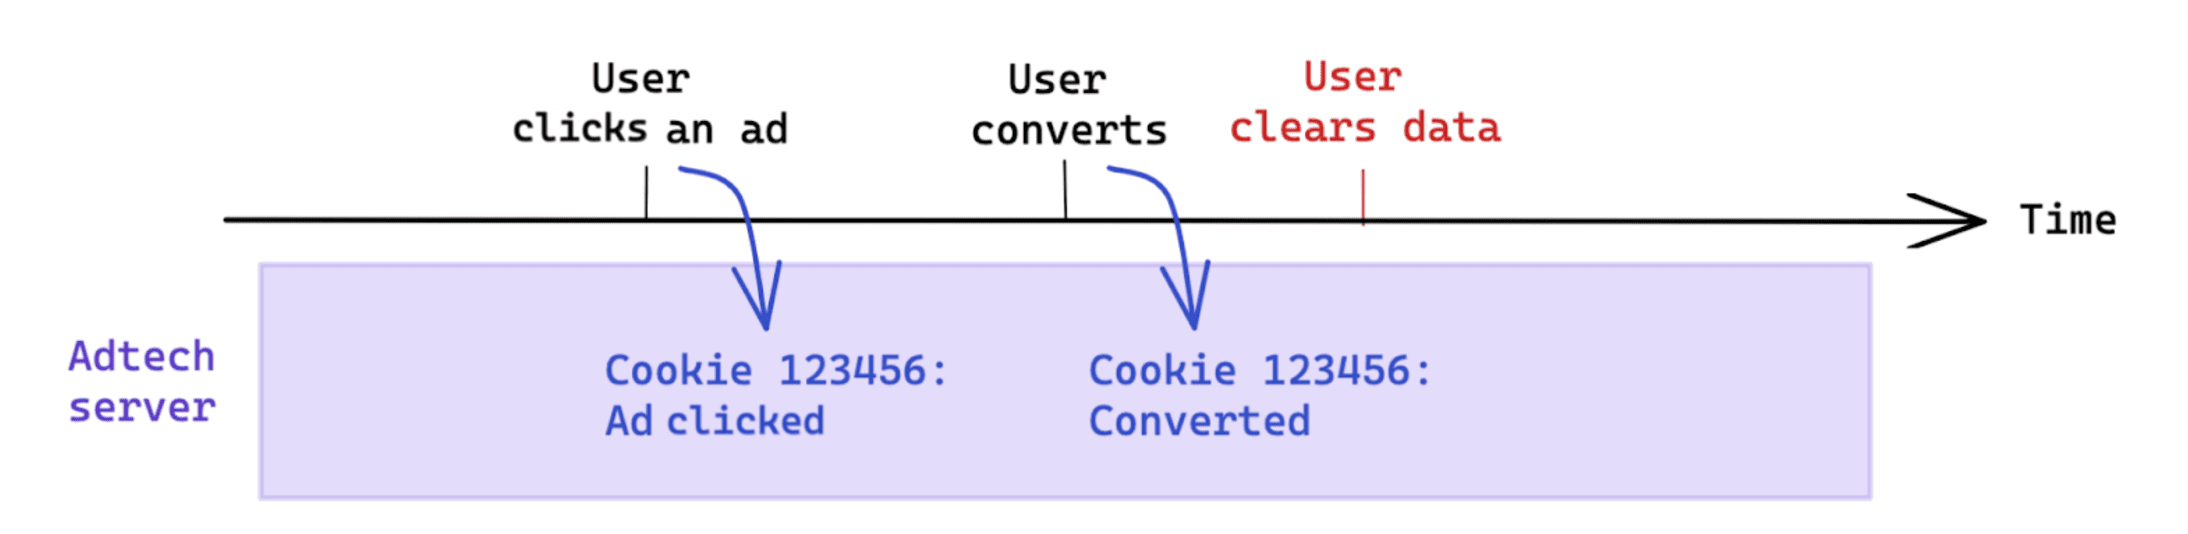 A limpeza de dados iniciada pelo usuário após uma conversão não afeta a medição com base em cookies.